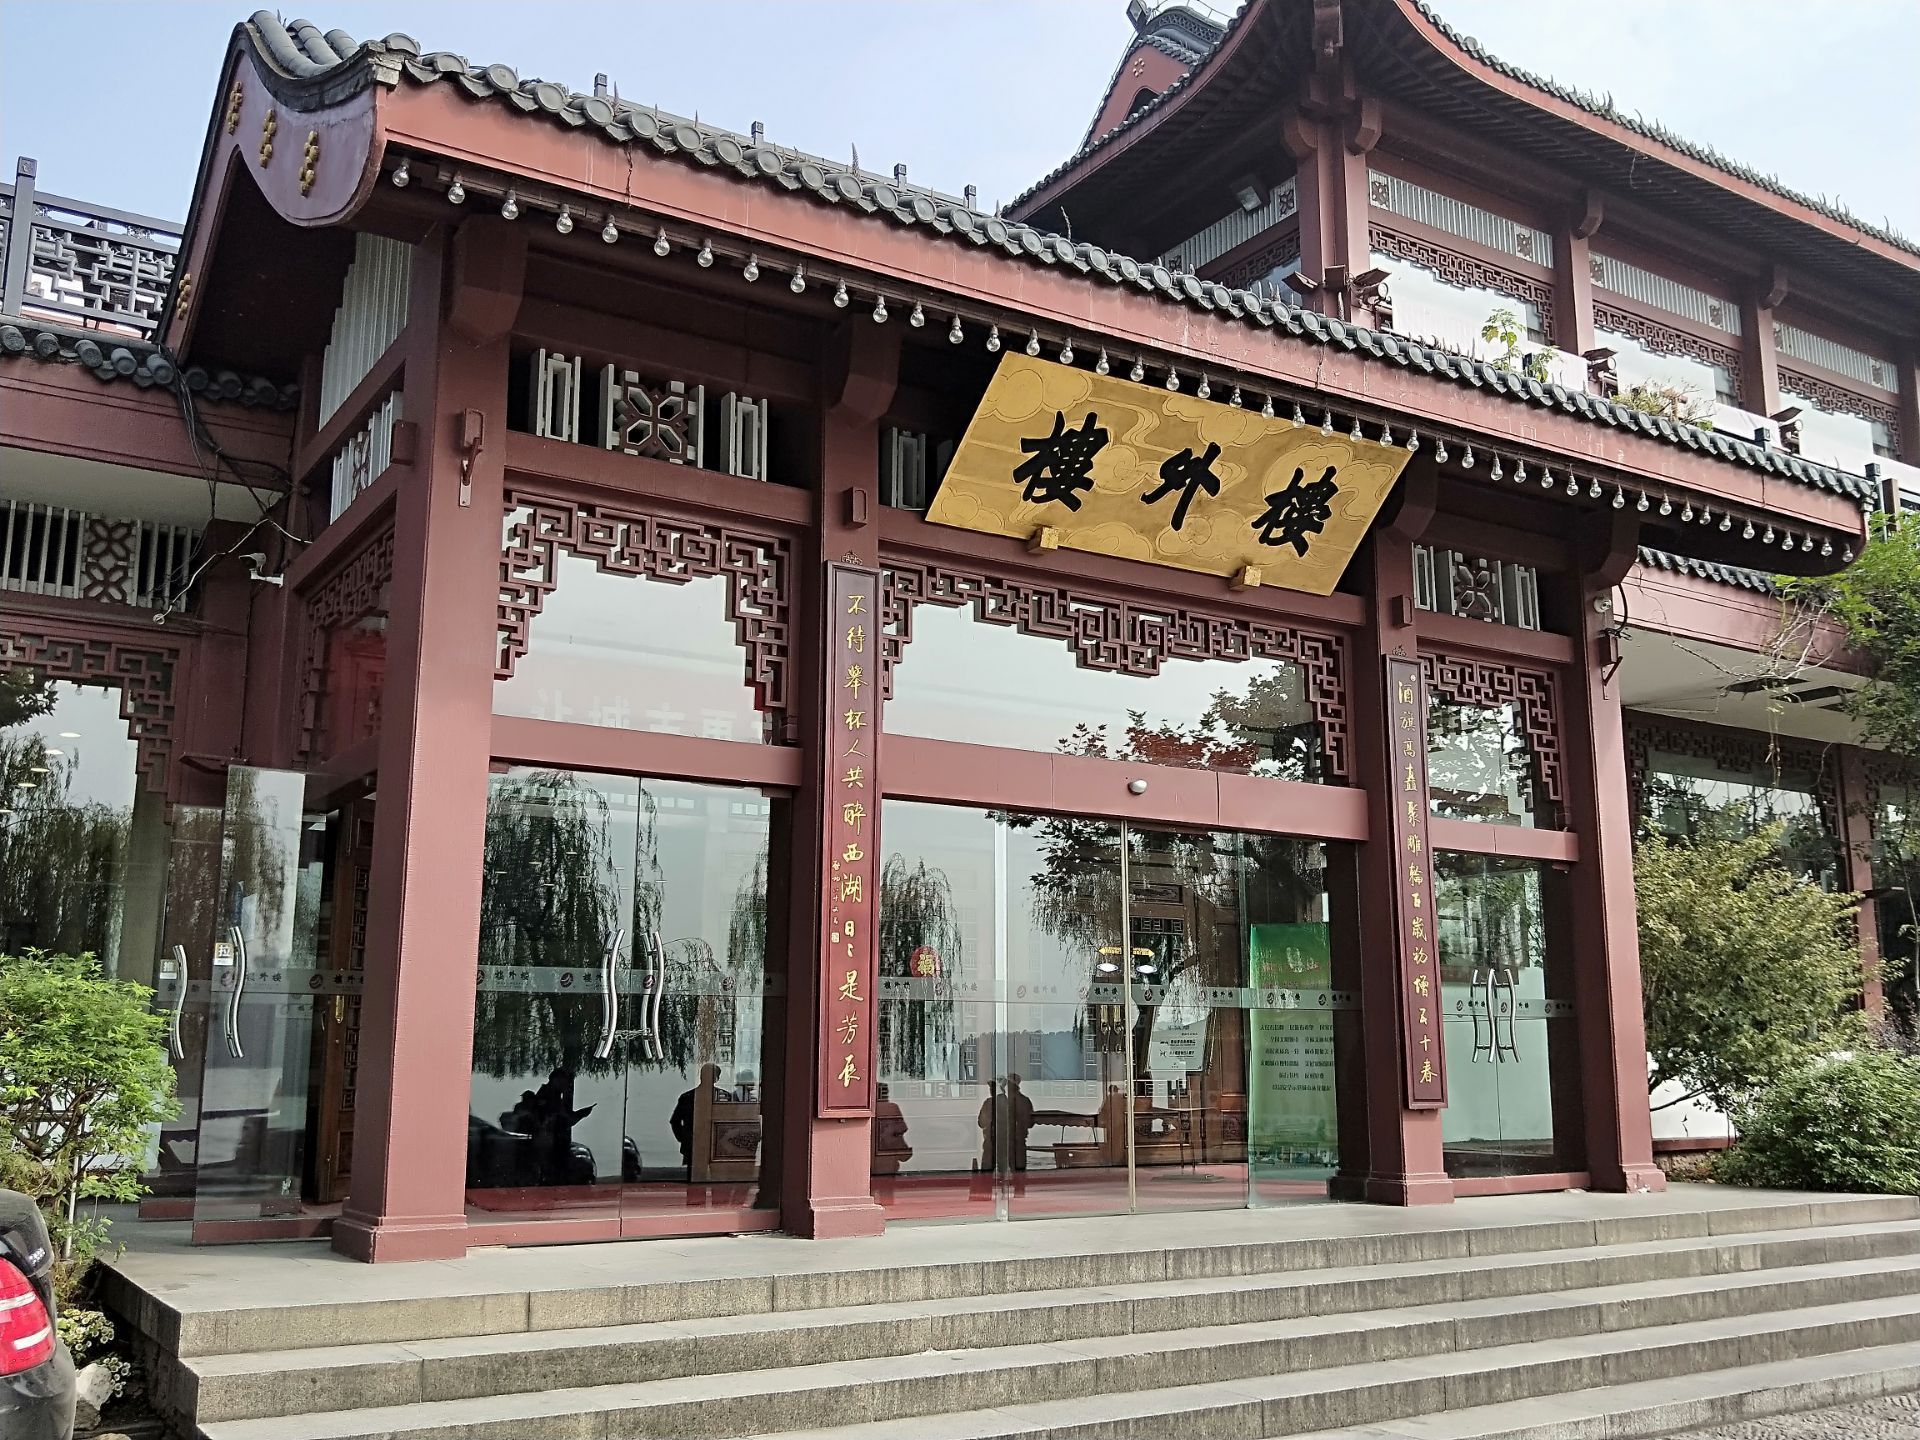 杭州楼外楼是一家百年老店,在杭州有多家分店,照片是孤山路店,坐落于